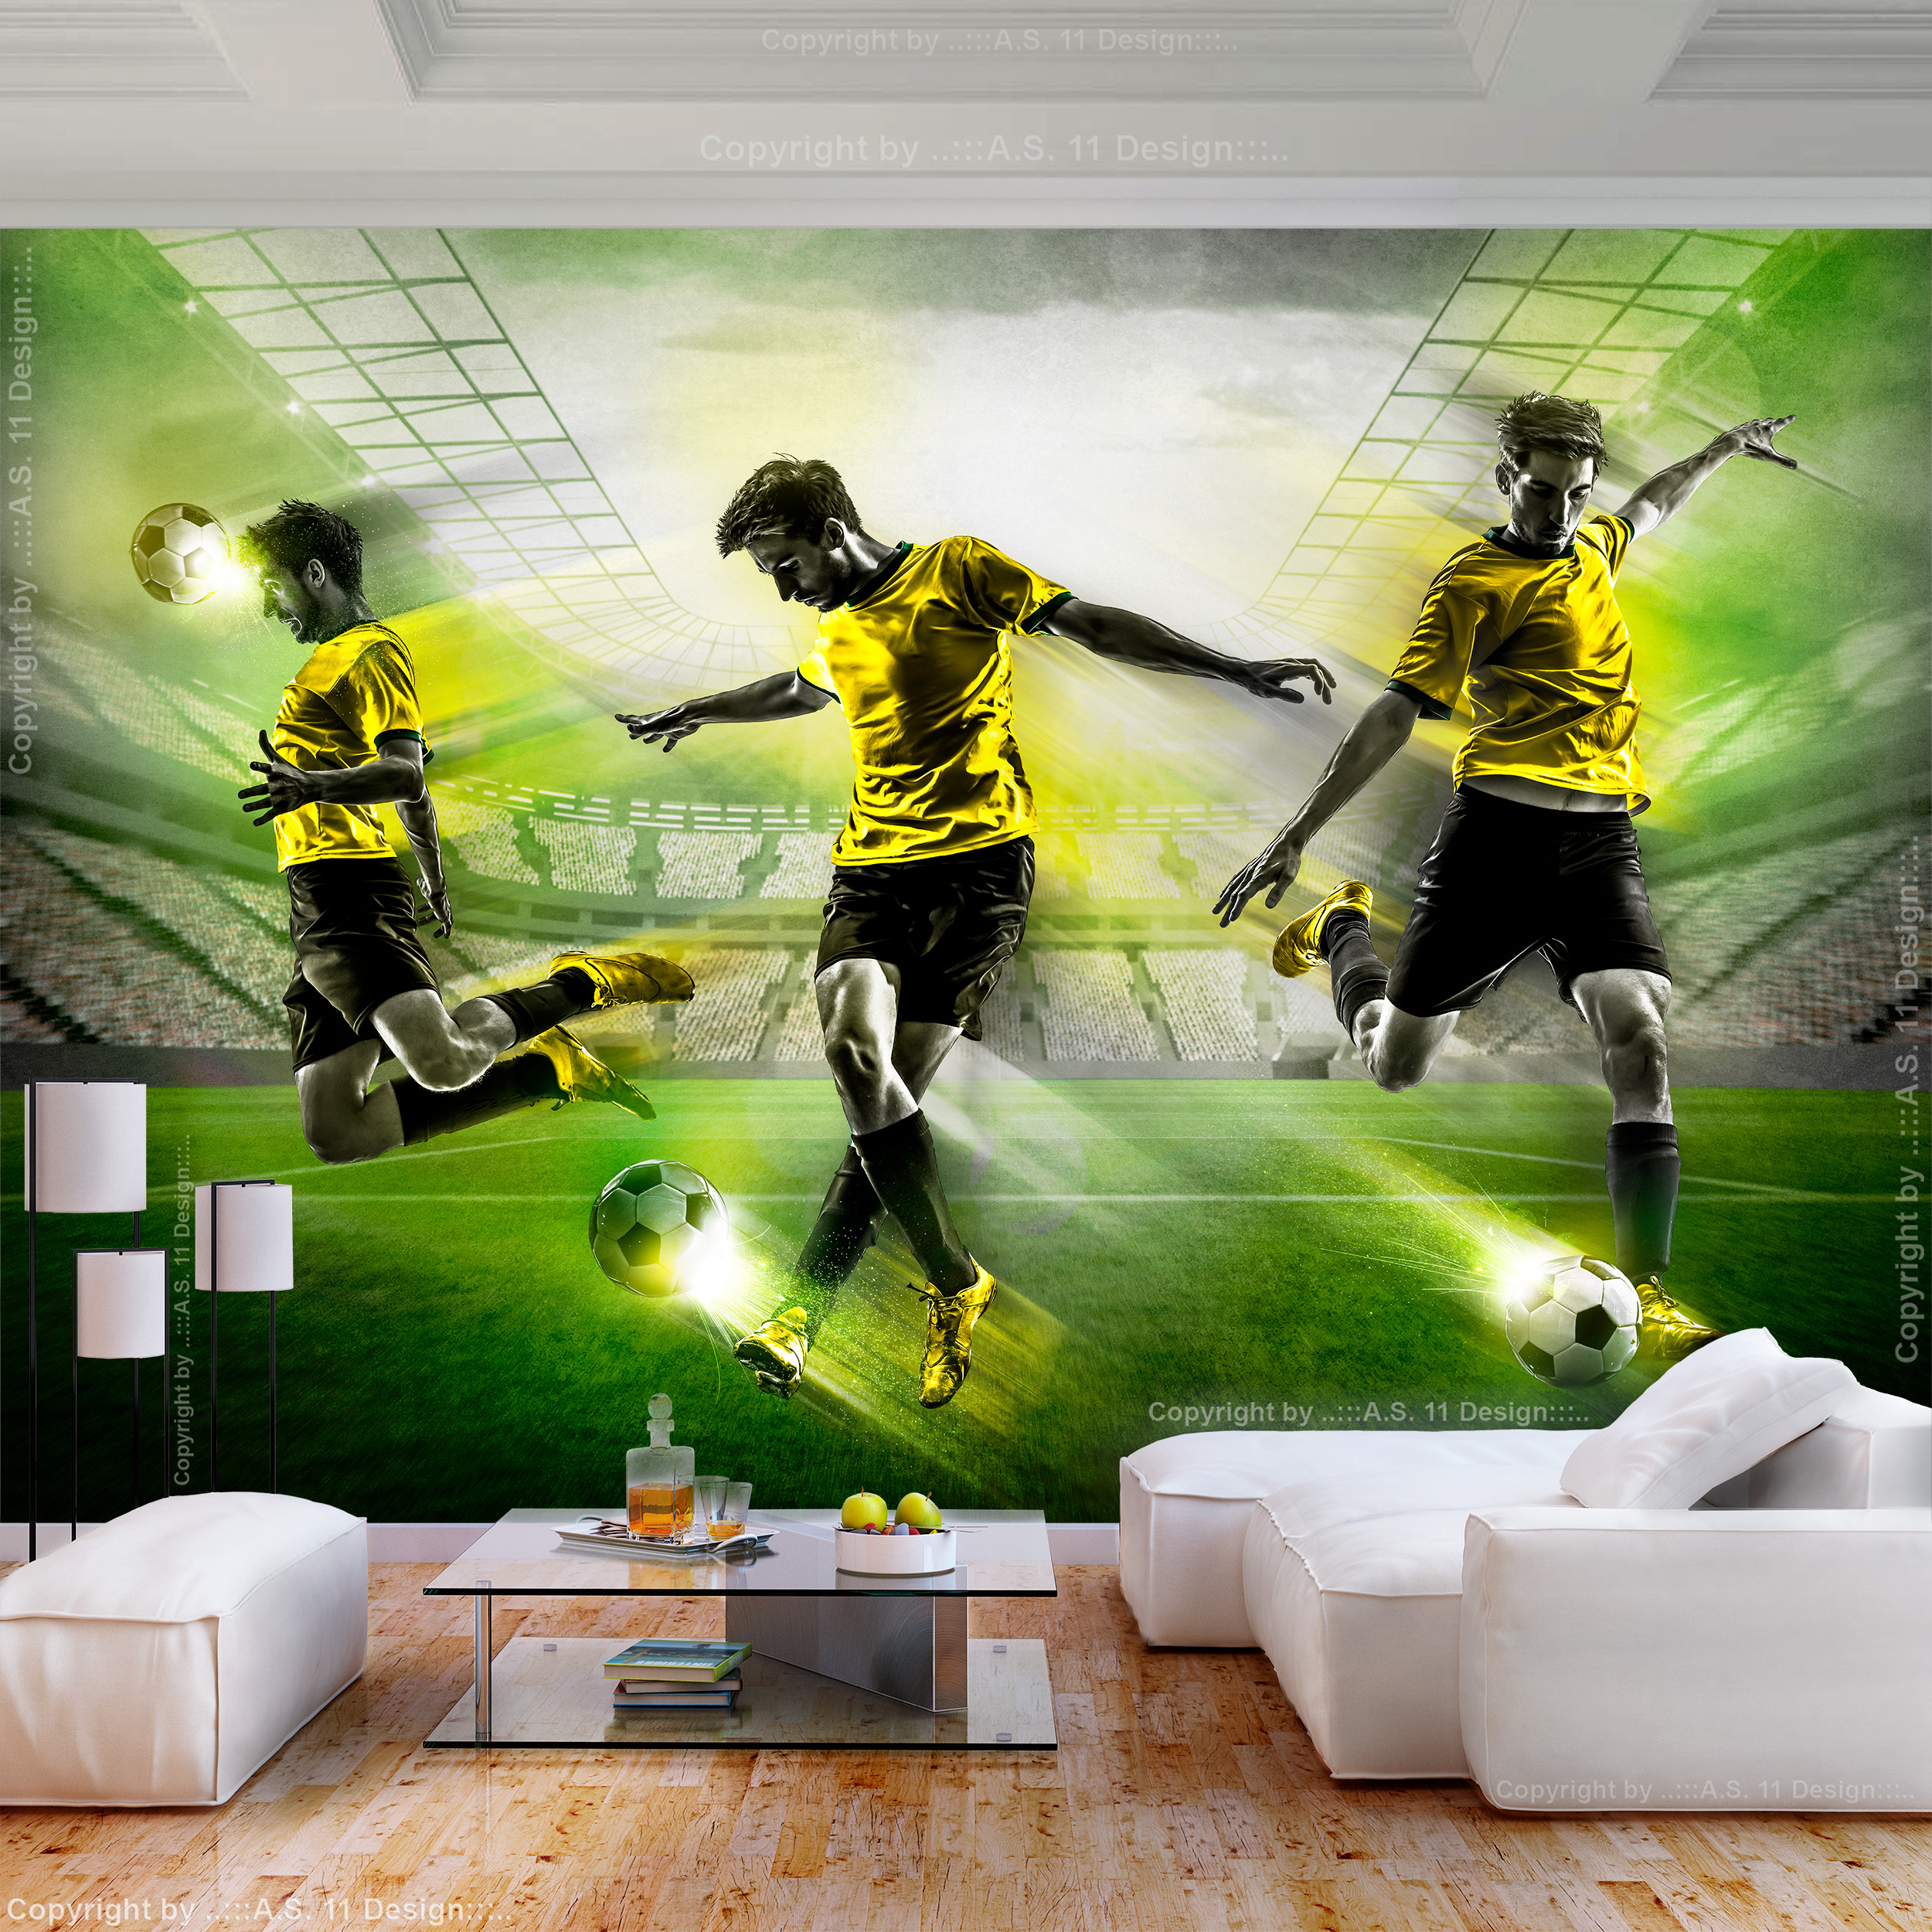 FOTOTAPETE selbstklebend Tapete Fußball Fußballplatz Kinderzimmer Wandtapete